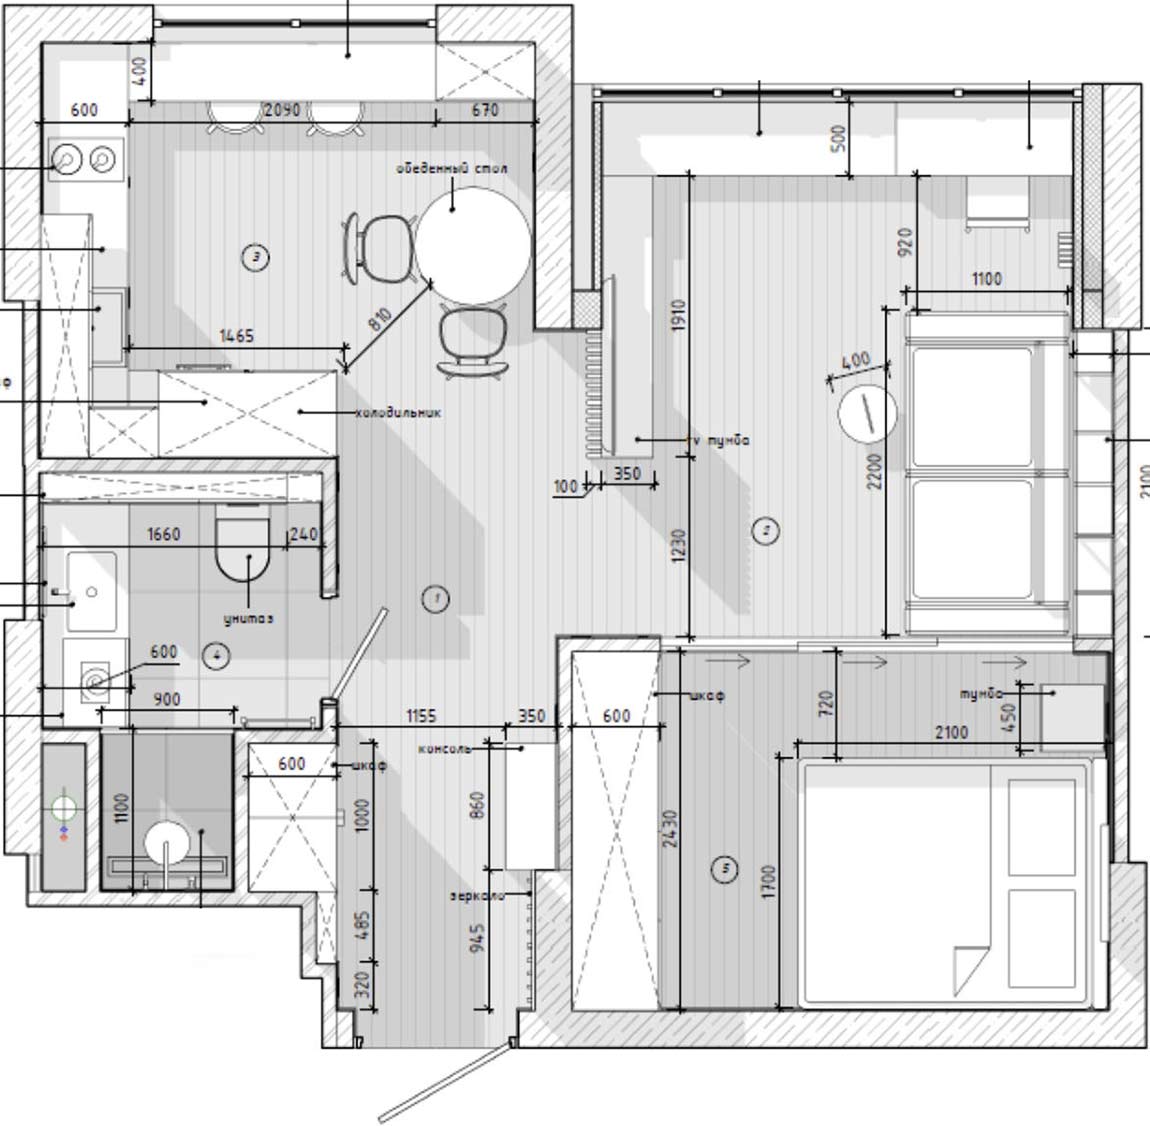 Türkiz előszoba, szürke fürdőszoba, kreatív megoldások - stílusos kis lakás berendezés 41m2-en